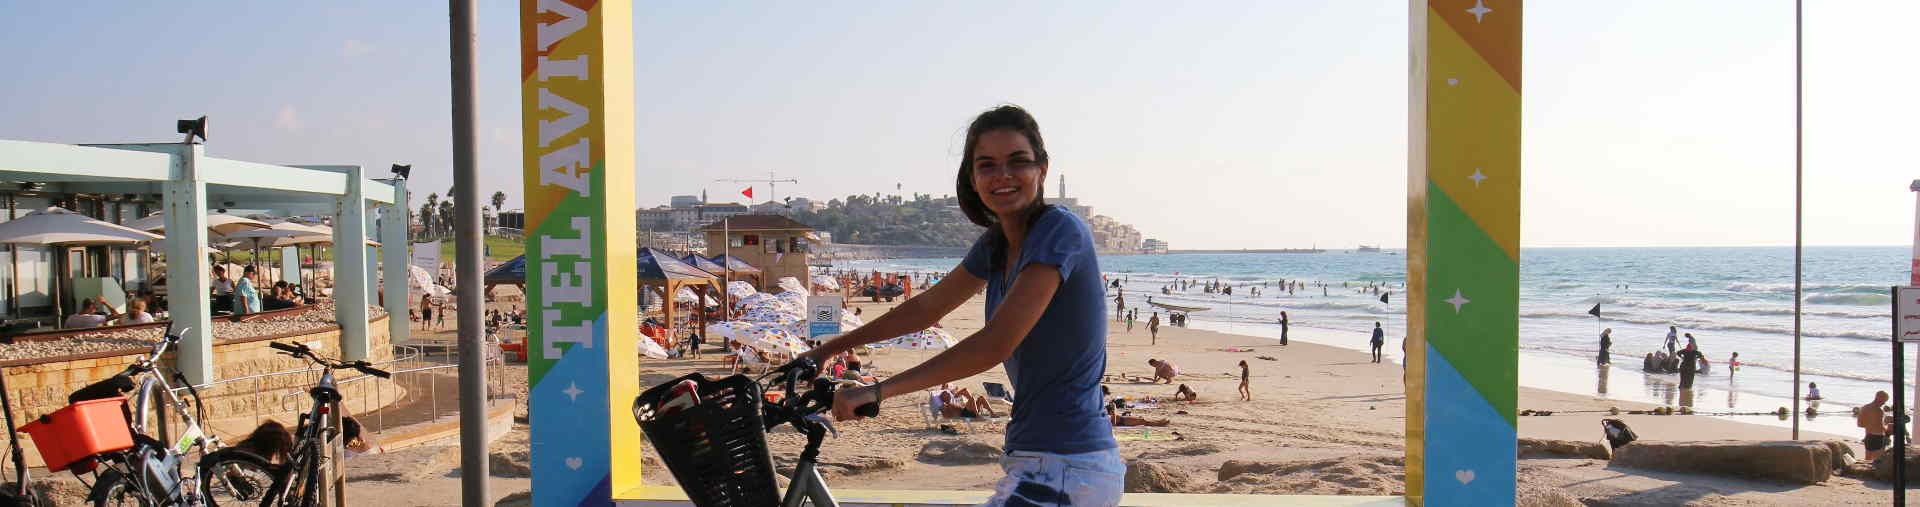 משתתפת בסיור אופניים בתל אביב